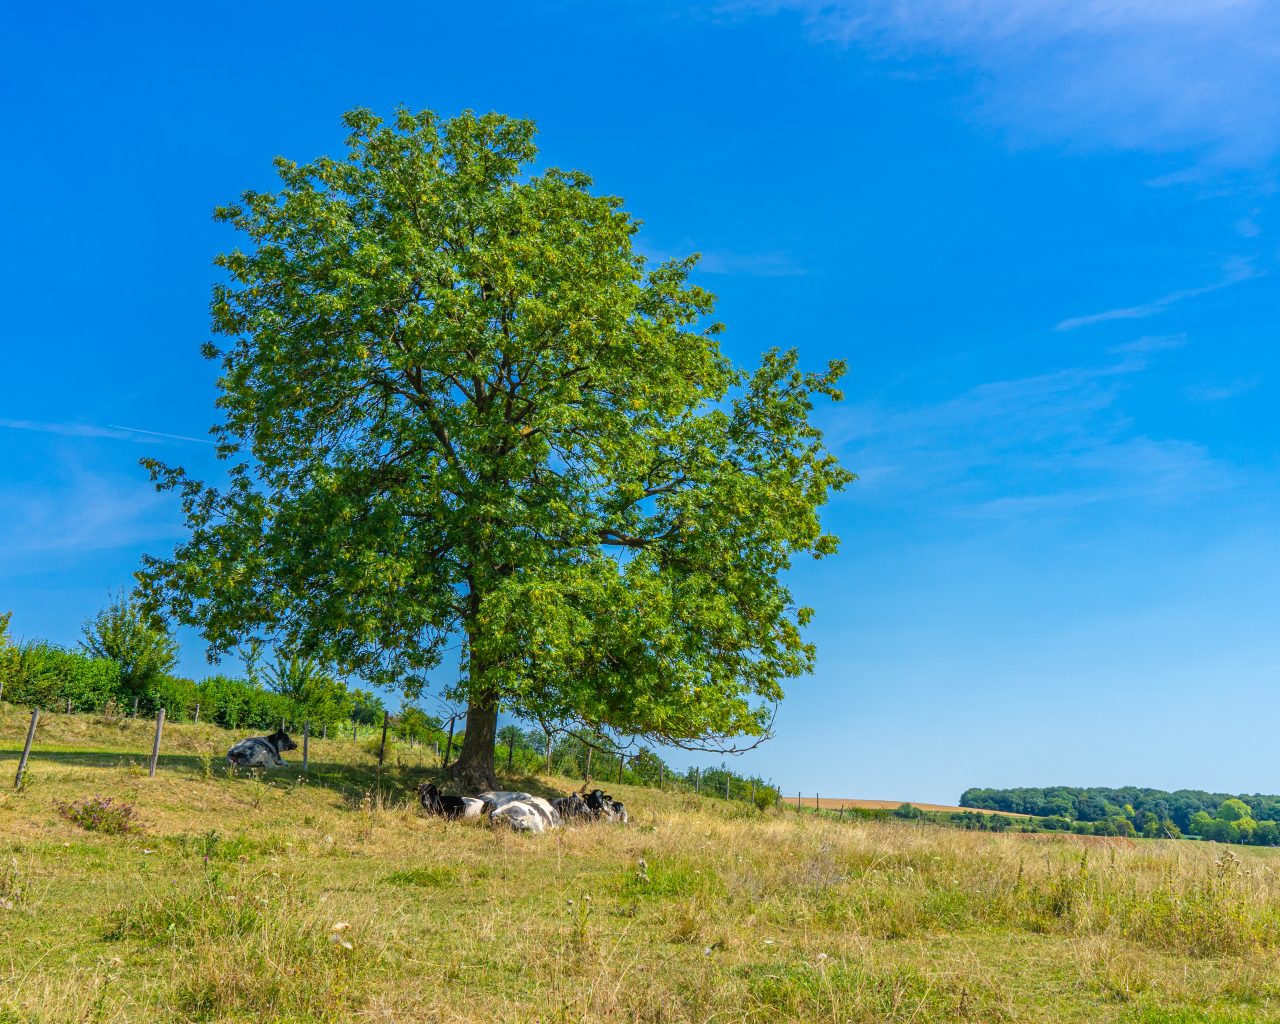 Koeien-in-schaduw-van-boom-tijdens-wandeling-Zuid-Limburg